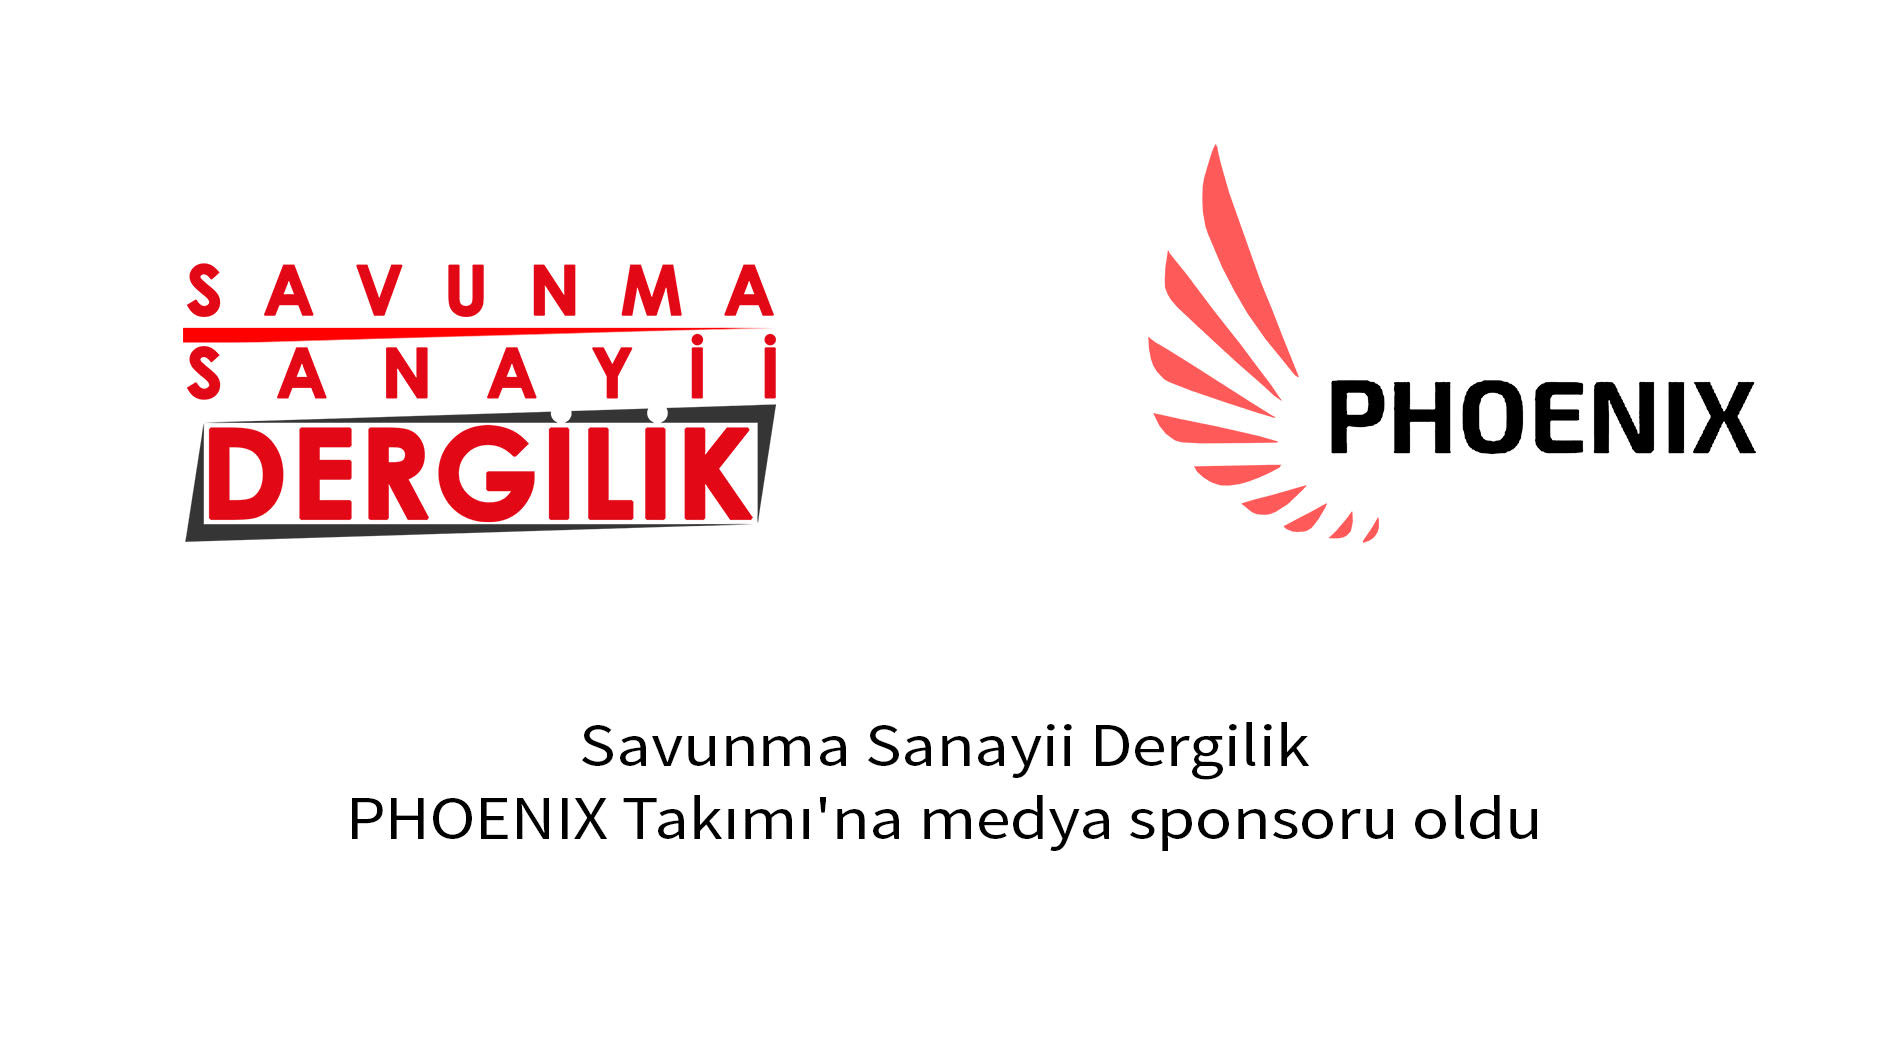 Savunma Sanayii Dergilik, PHOENIX Takımı'na medya sponsoru oldu